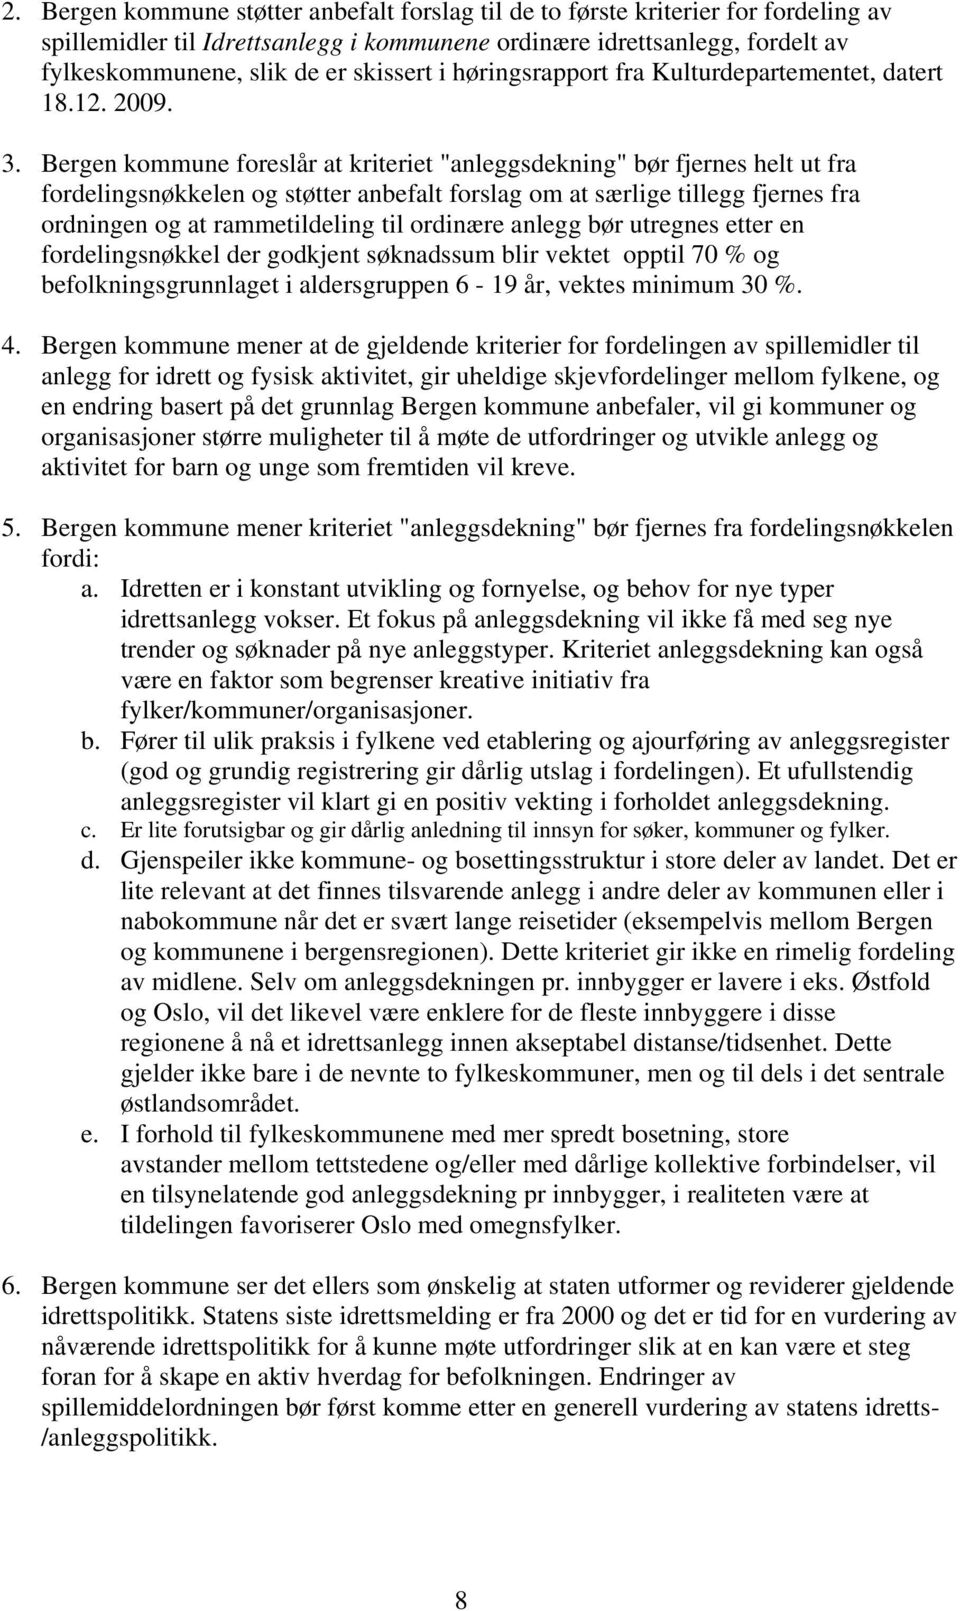 Bergen kommune foreslår at kriteriet "anleggsdekning" bør fjernes helt ut fra fordelingsnøkkelen og støtter anbefalt forslag om at særlige tillegg fjernes fra ordningen og at rammetildeling til